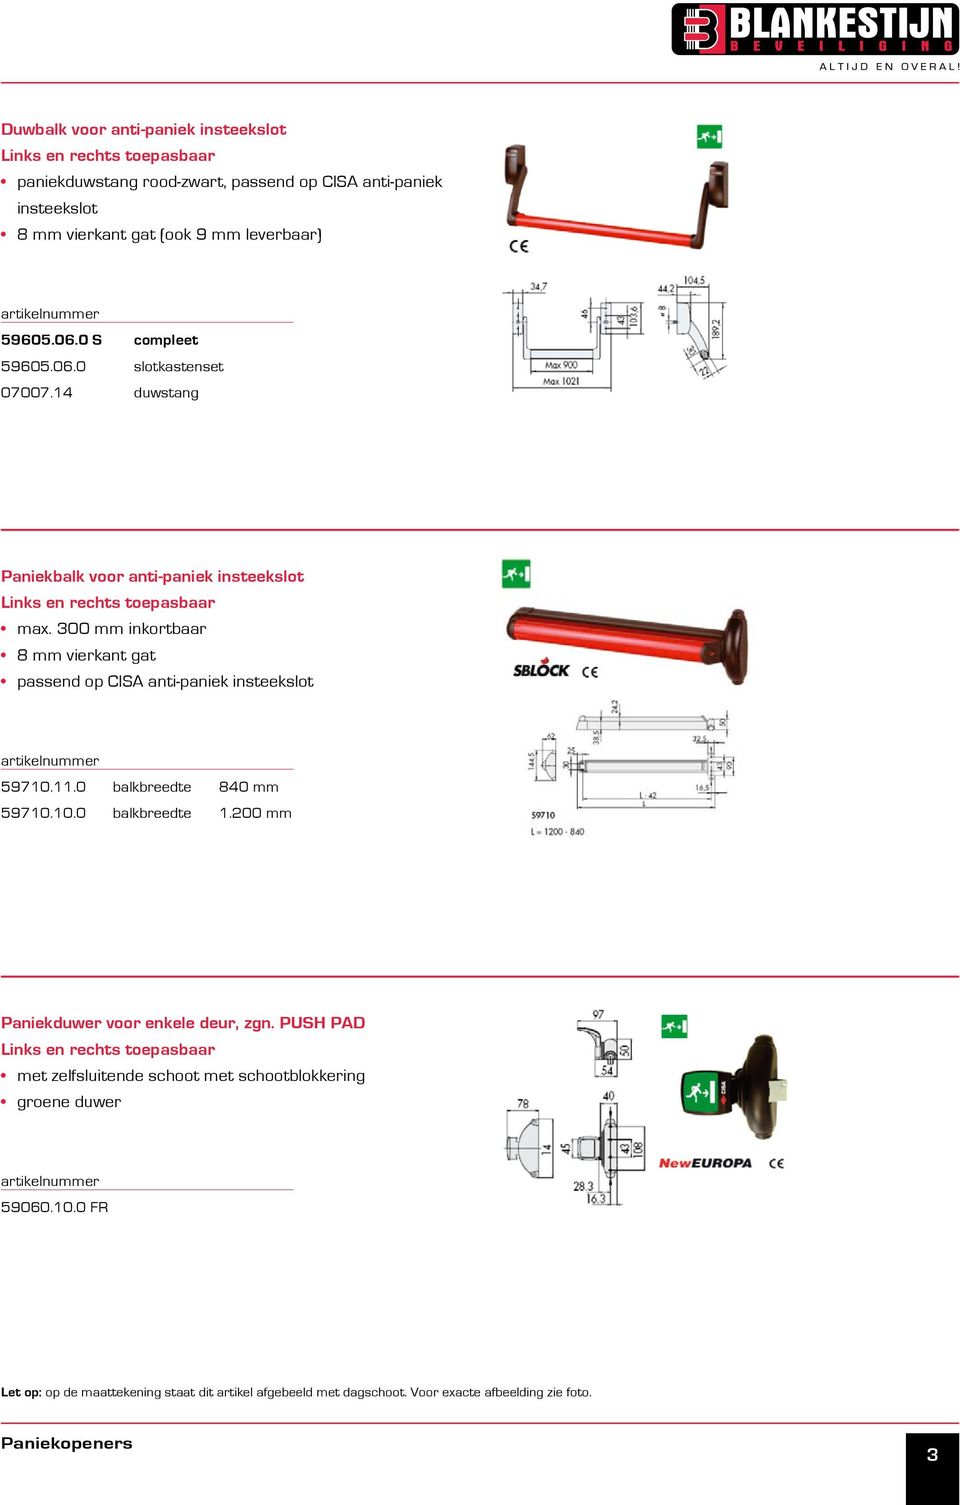 300 mm inkortbaar 8 mm vierkant gat passend op CISA anti-paniek insteekslot 59710.11.0 balkbreedte 840 mm 59710.10.0 balkbreedte 1.